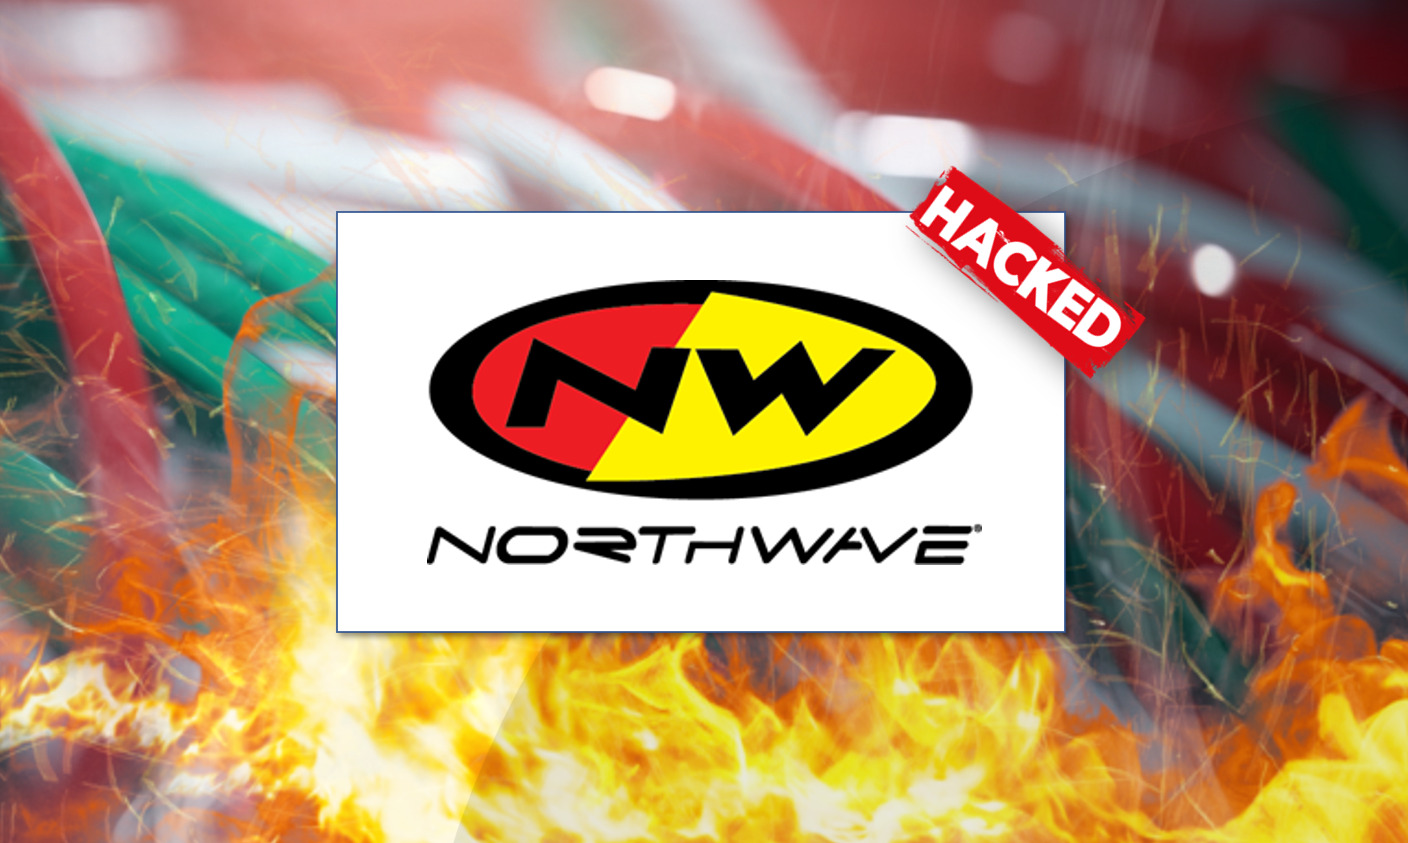 Un Lunedì Mattina da Incubo: l’Attacco Hacker che ha Colpito l’italiana Northwave